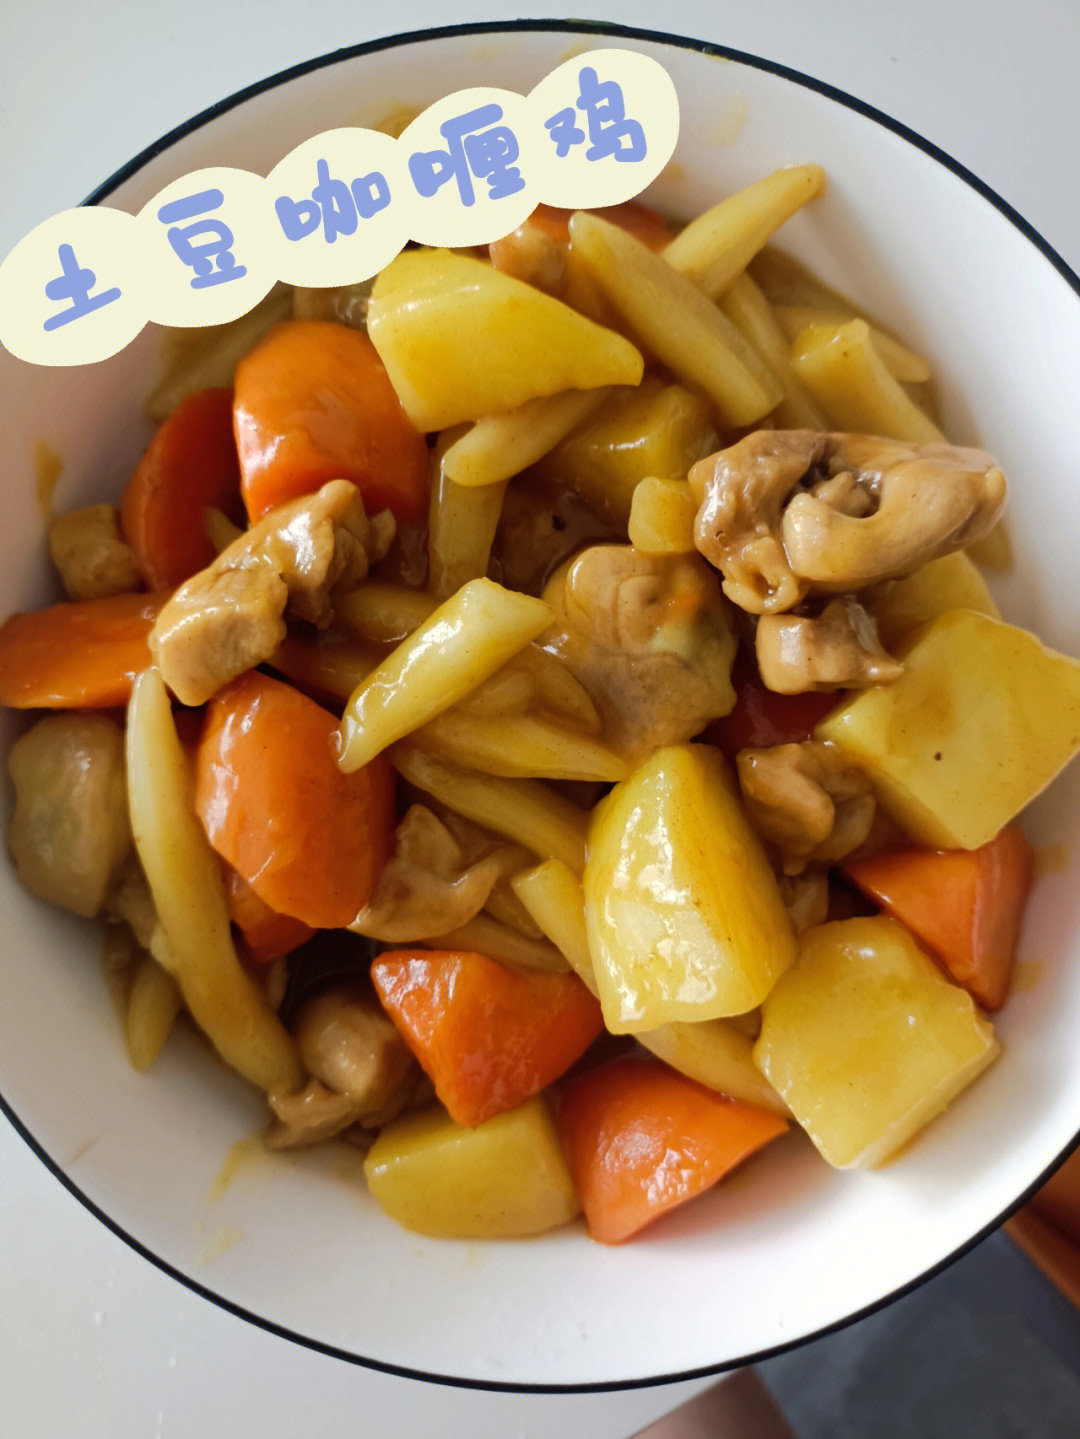 锅内油烧热,放入生姜片炝锅,放入土豆和胡萝卜块翻炒,再加入鸡腿肉翻